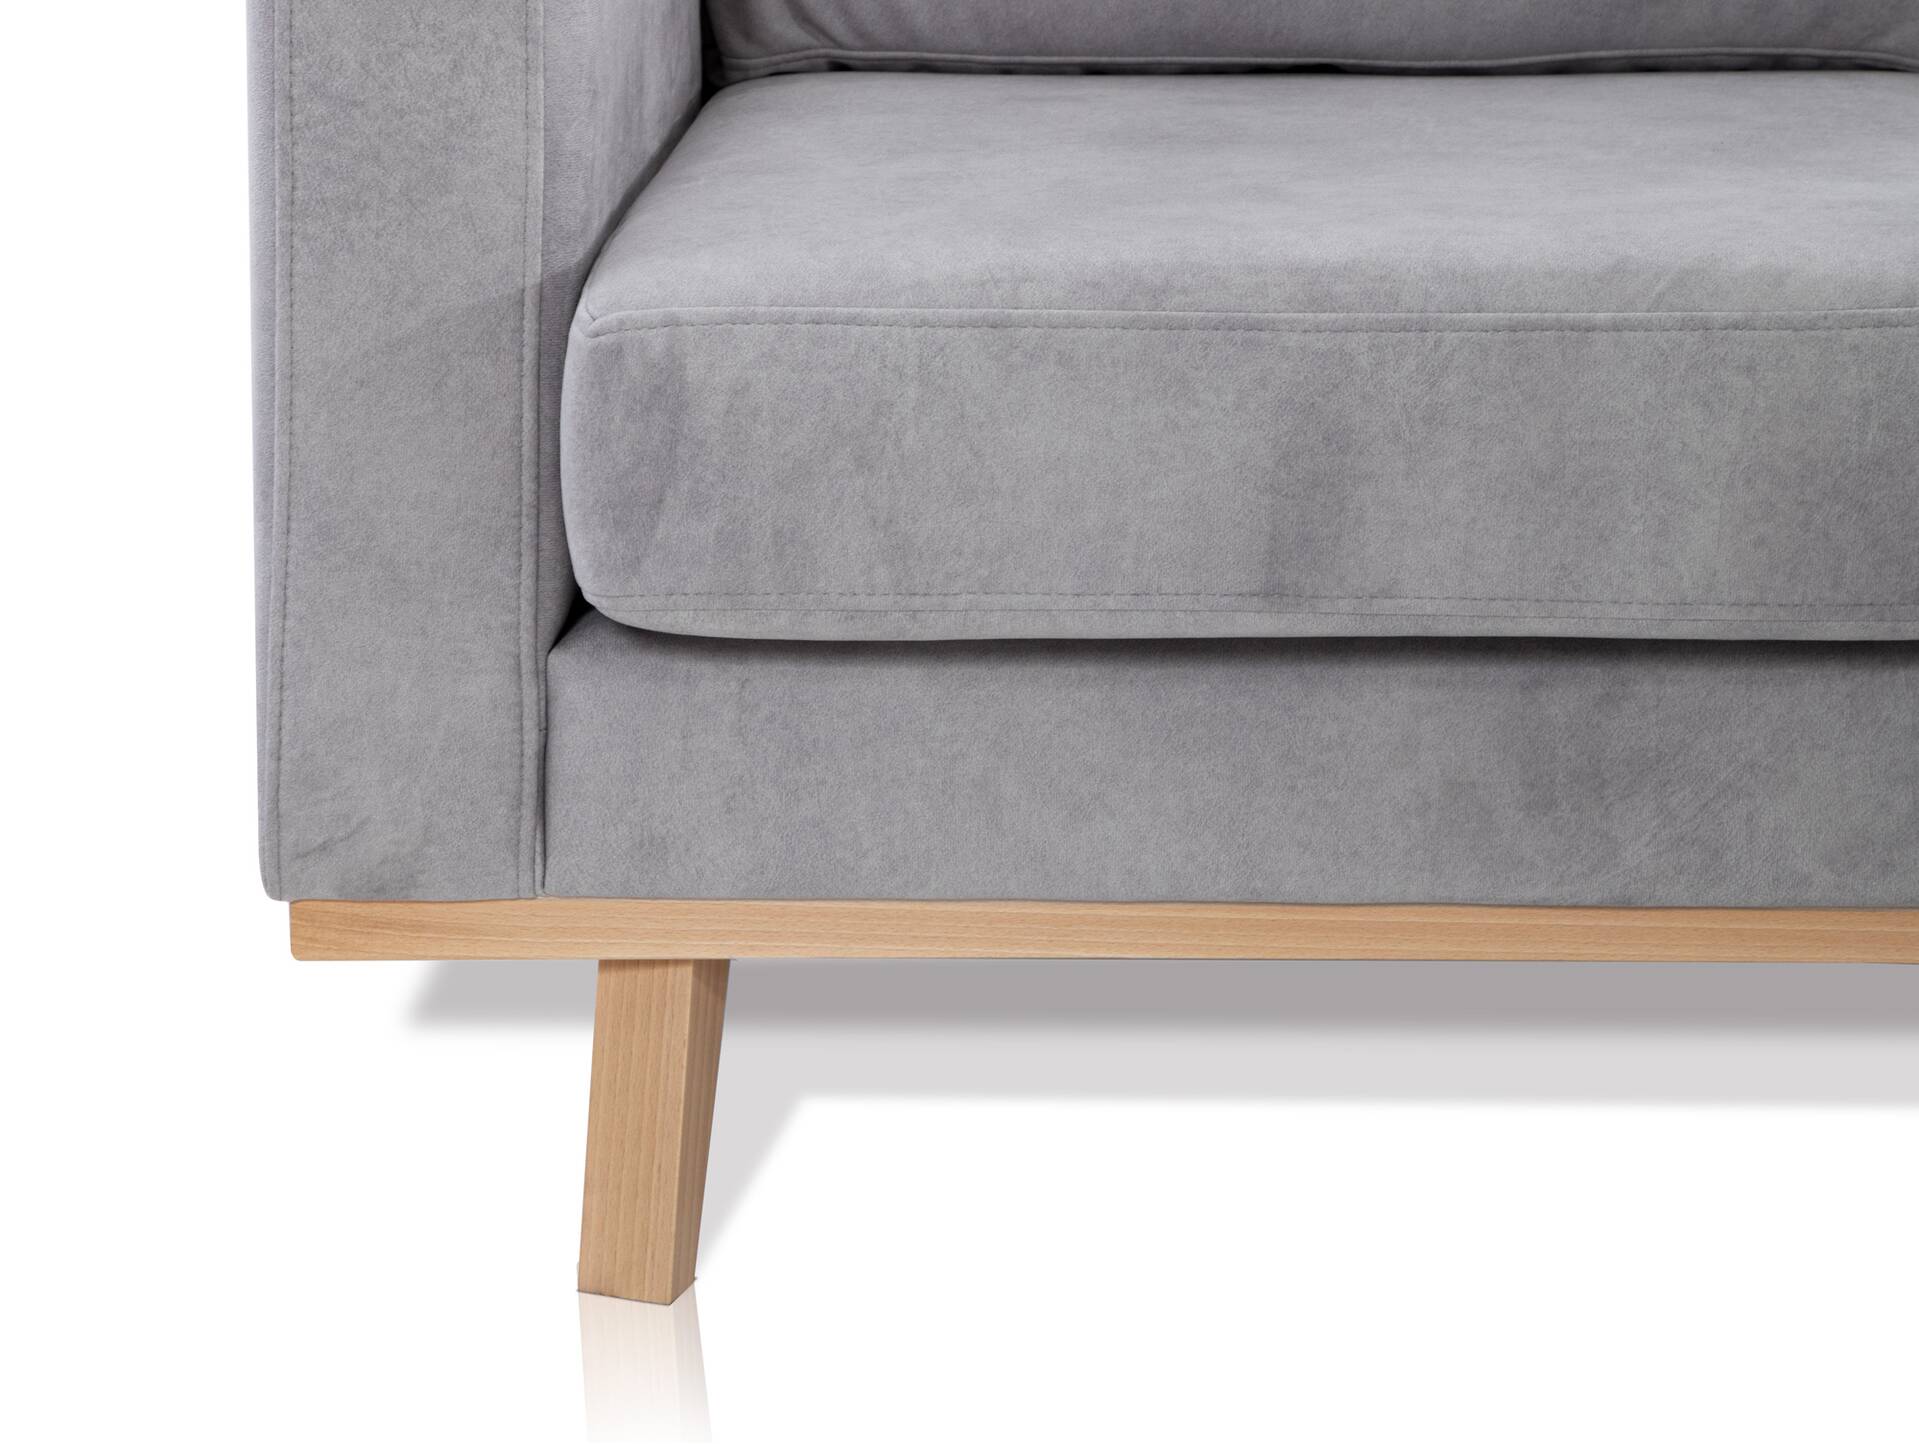 CORIN 2-Sitzer Sofa mit Echtholz-Untergestell, Bezug in Velour-Optik Silbergrau